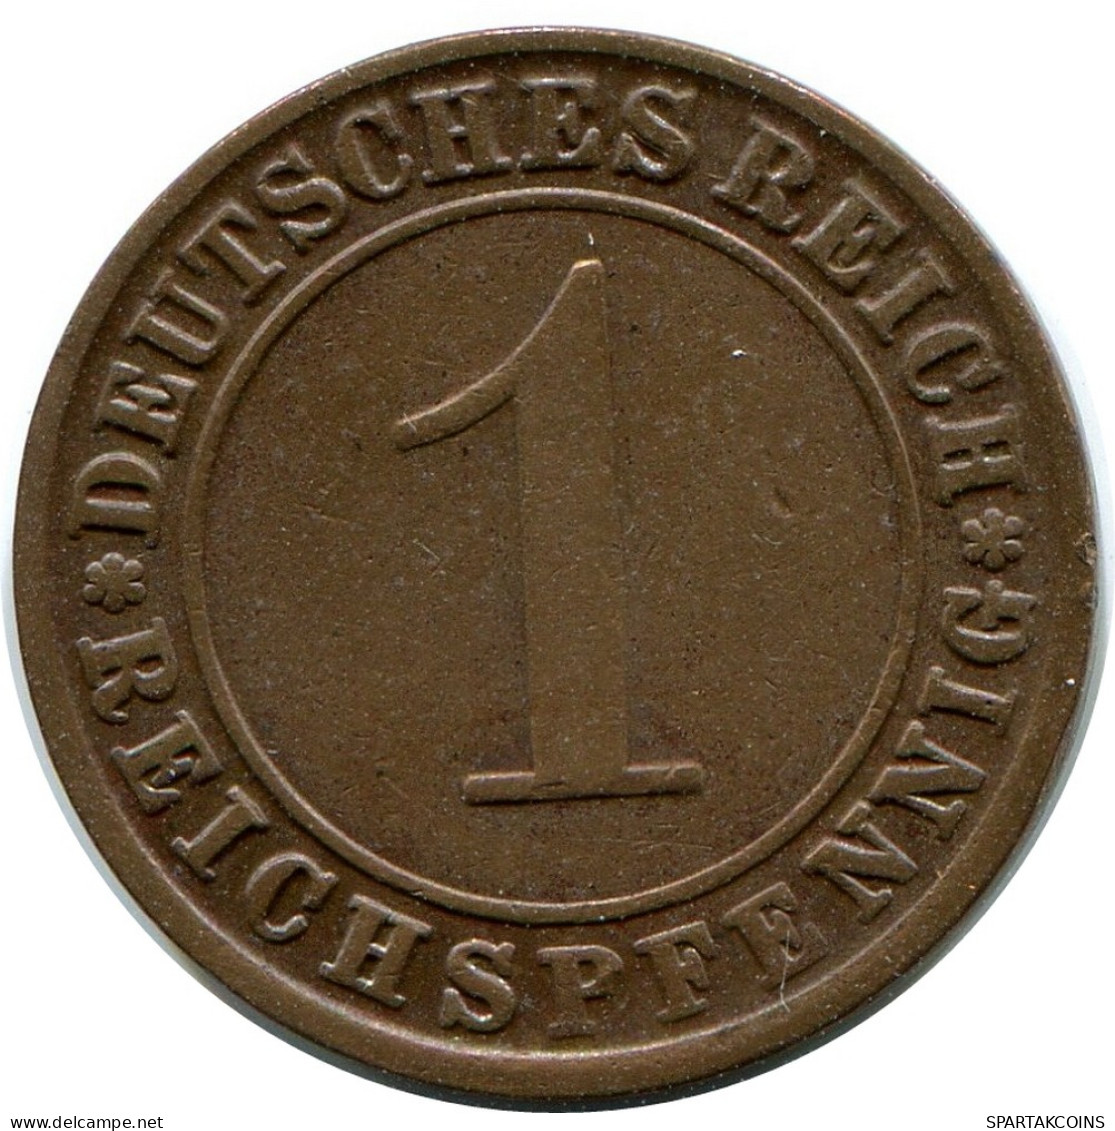 1 REICHSPFENNIG 1925 J ALLEMAGNE Pièce GERMANY #DB777.F - 1 Rentenpfennig & 1 Reichspfennig